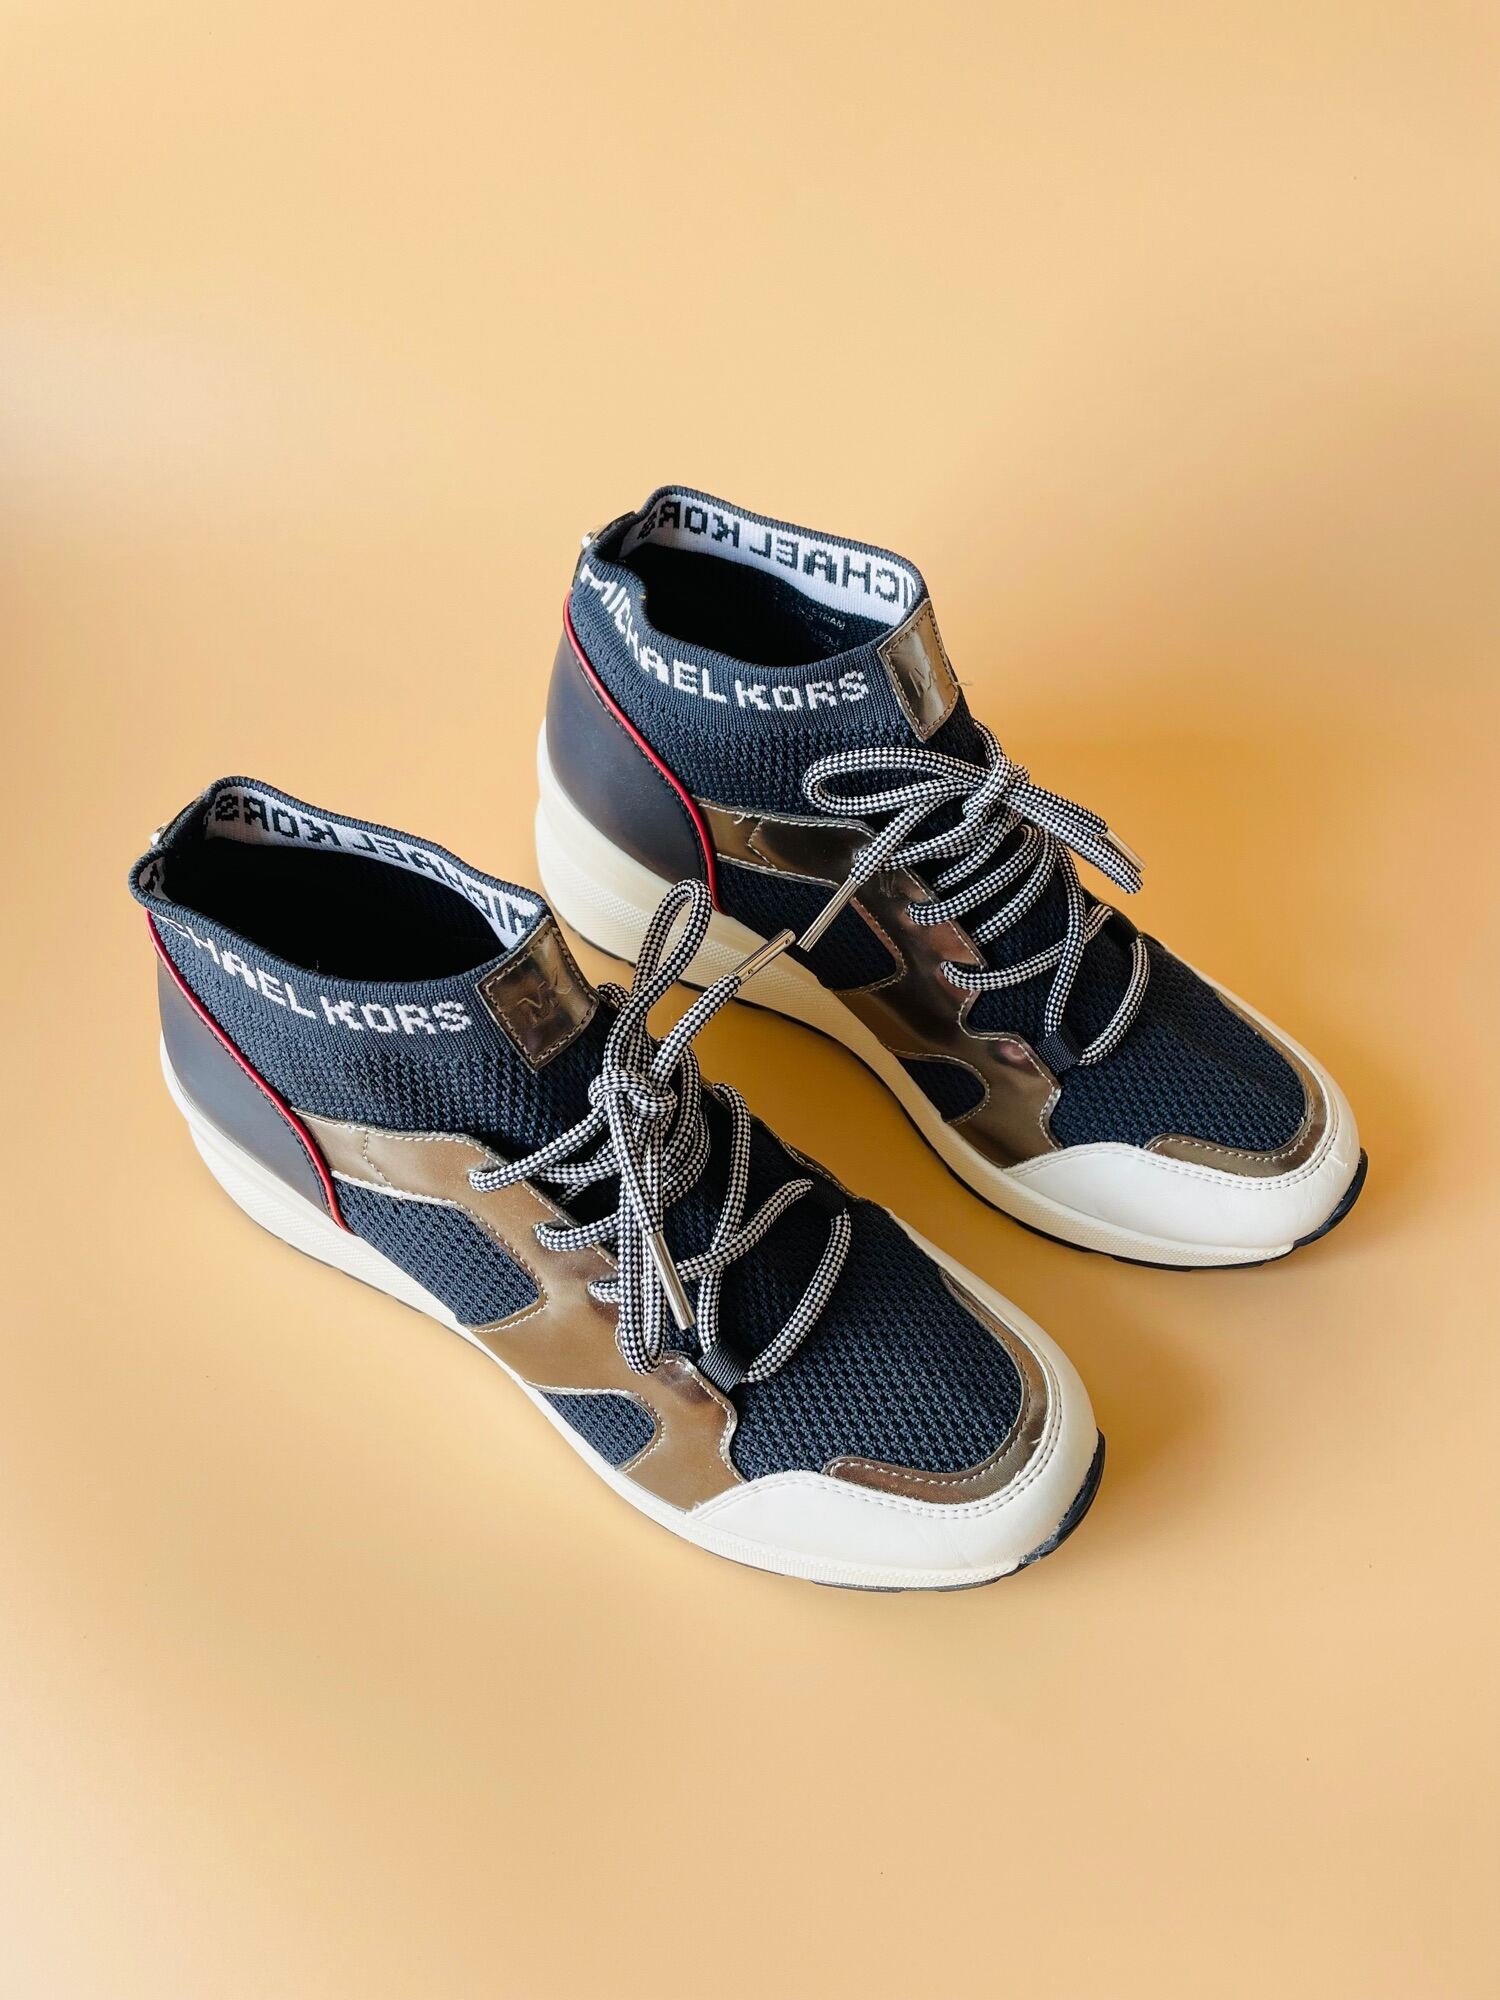 Giày nữ Sneaker MK đế cao Linh Store USA  Hàng xách tay Mỹ